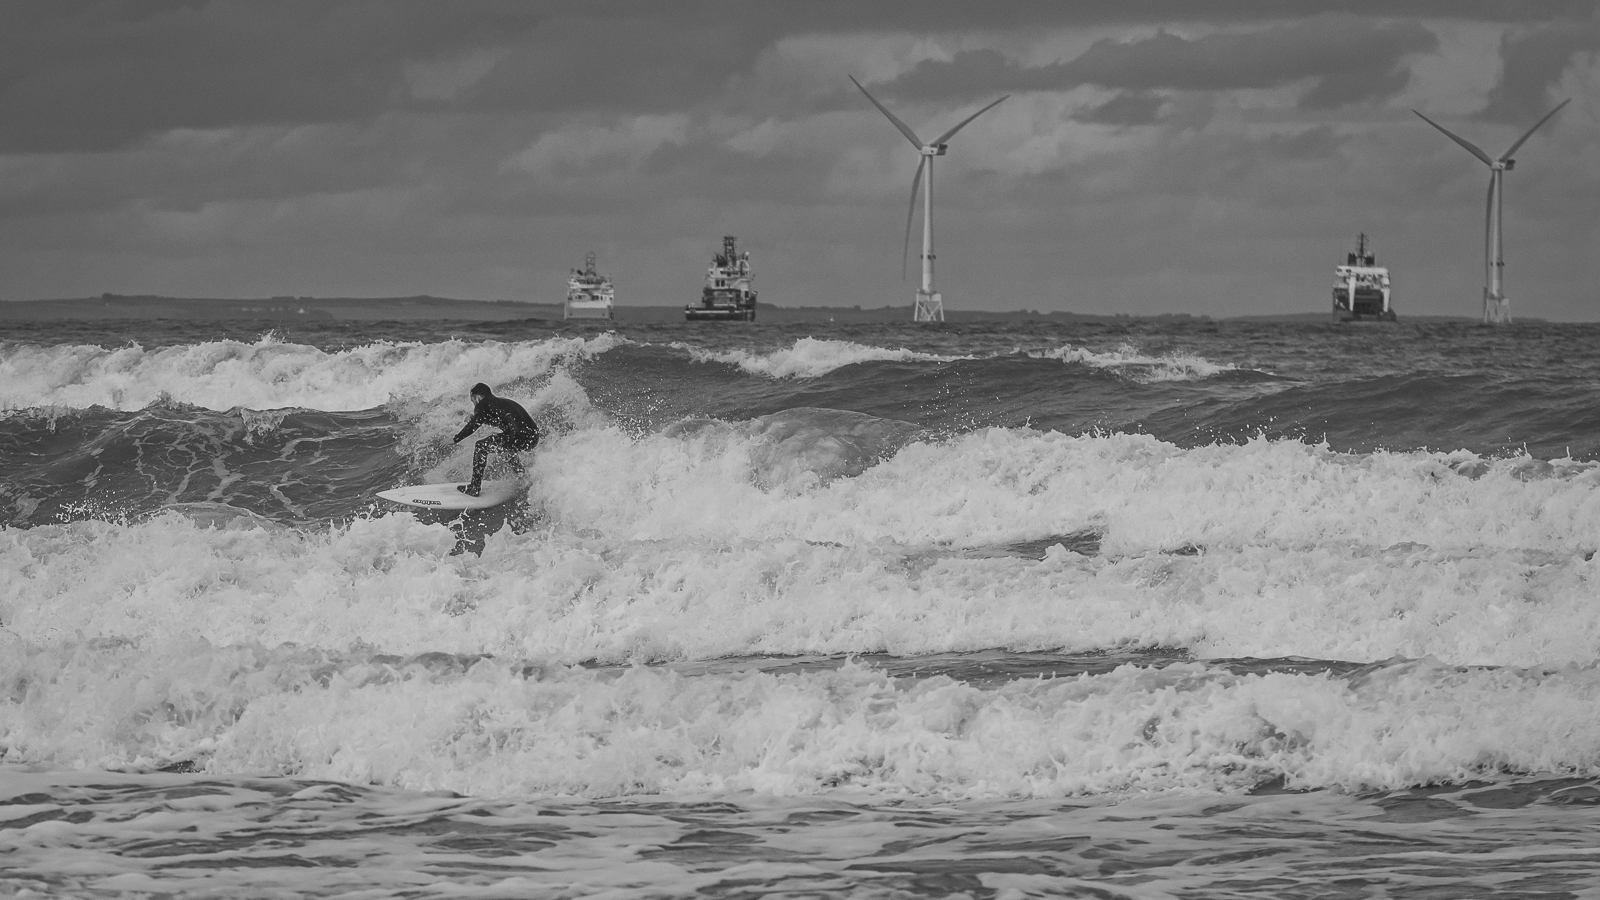 Aberdeen Surfer - 192 - M2